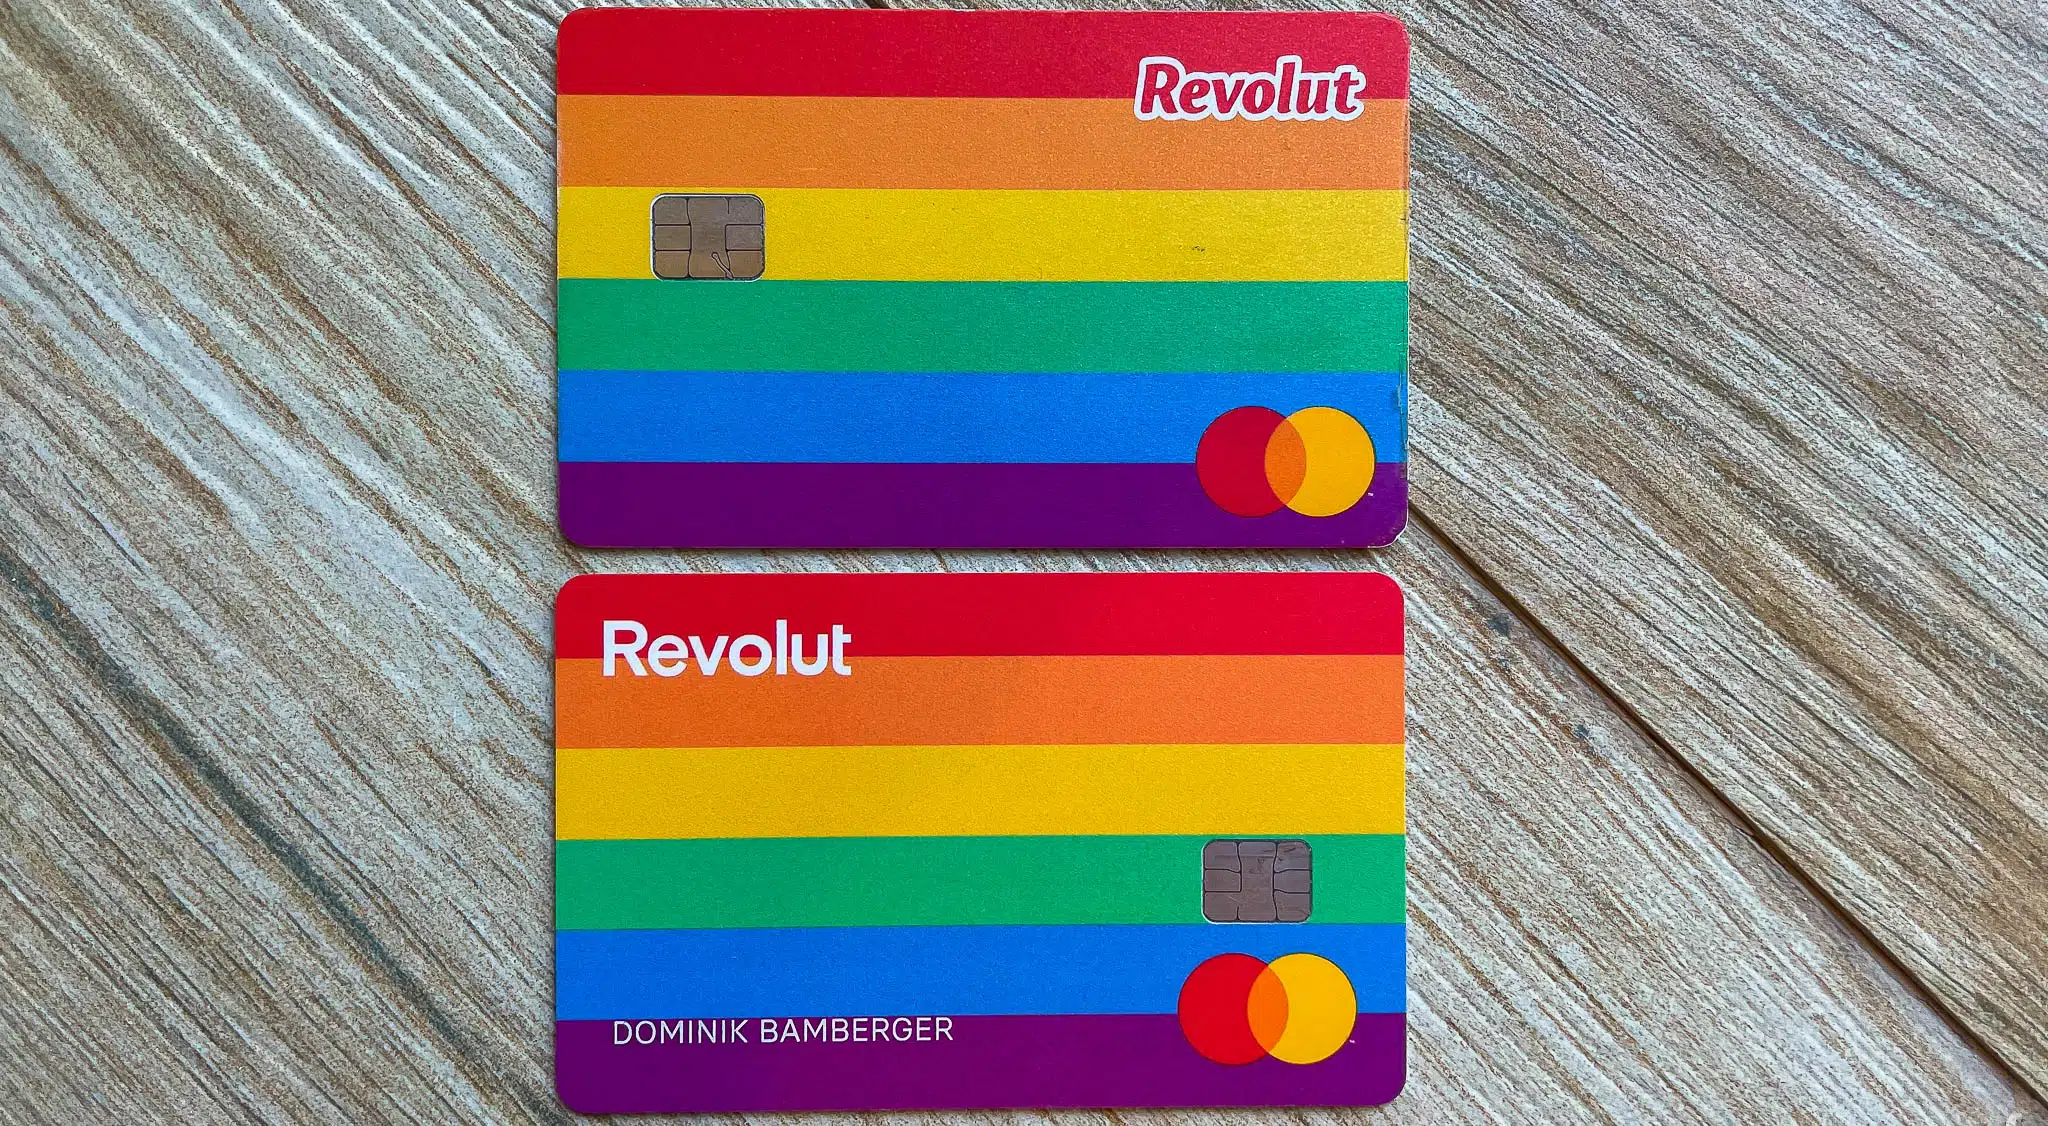 revolut pride.jpg Kreditkarte